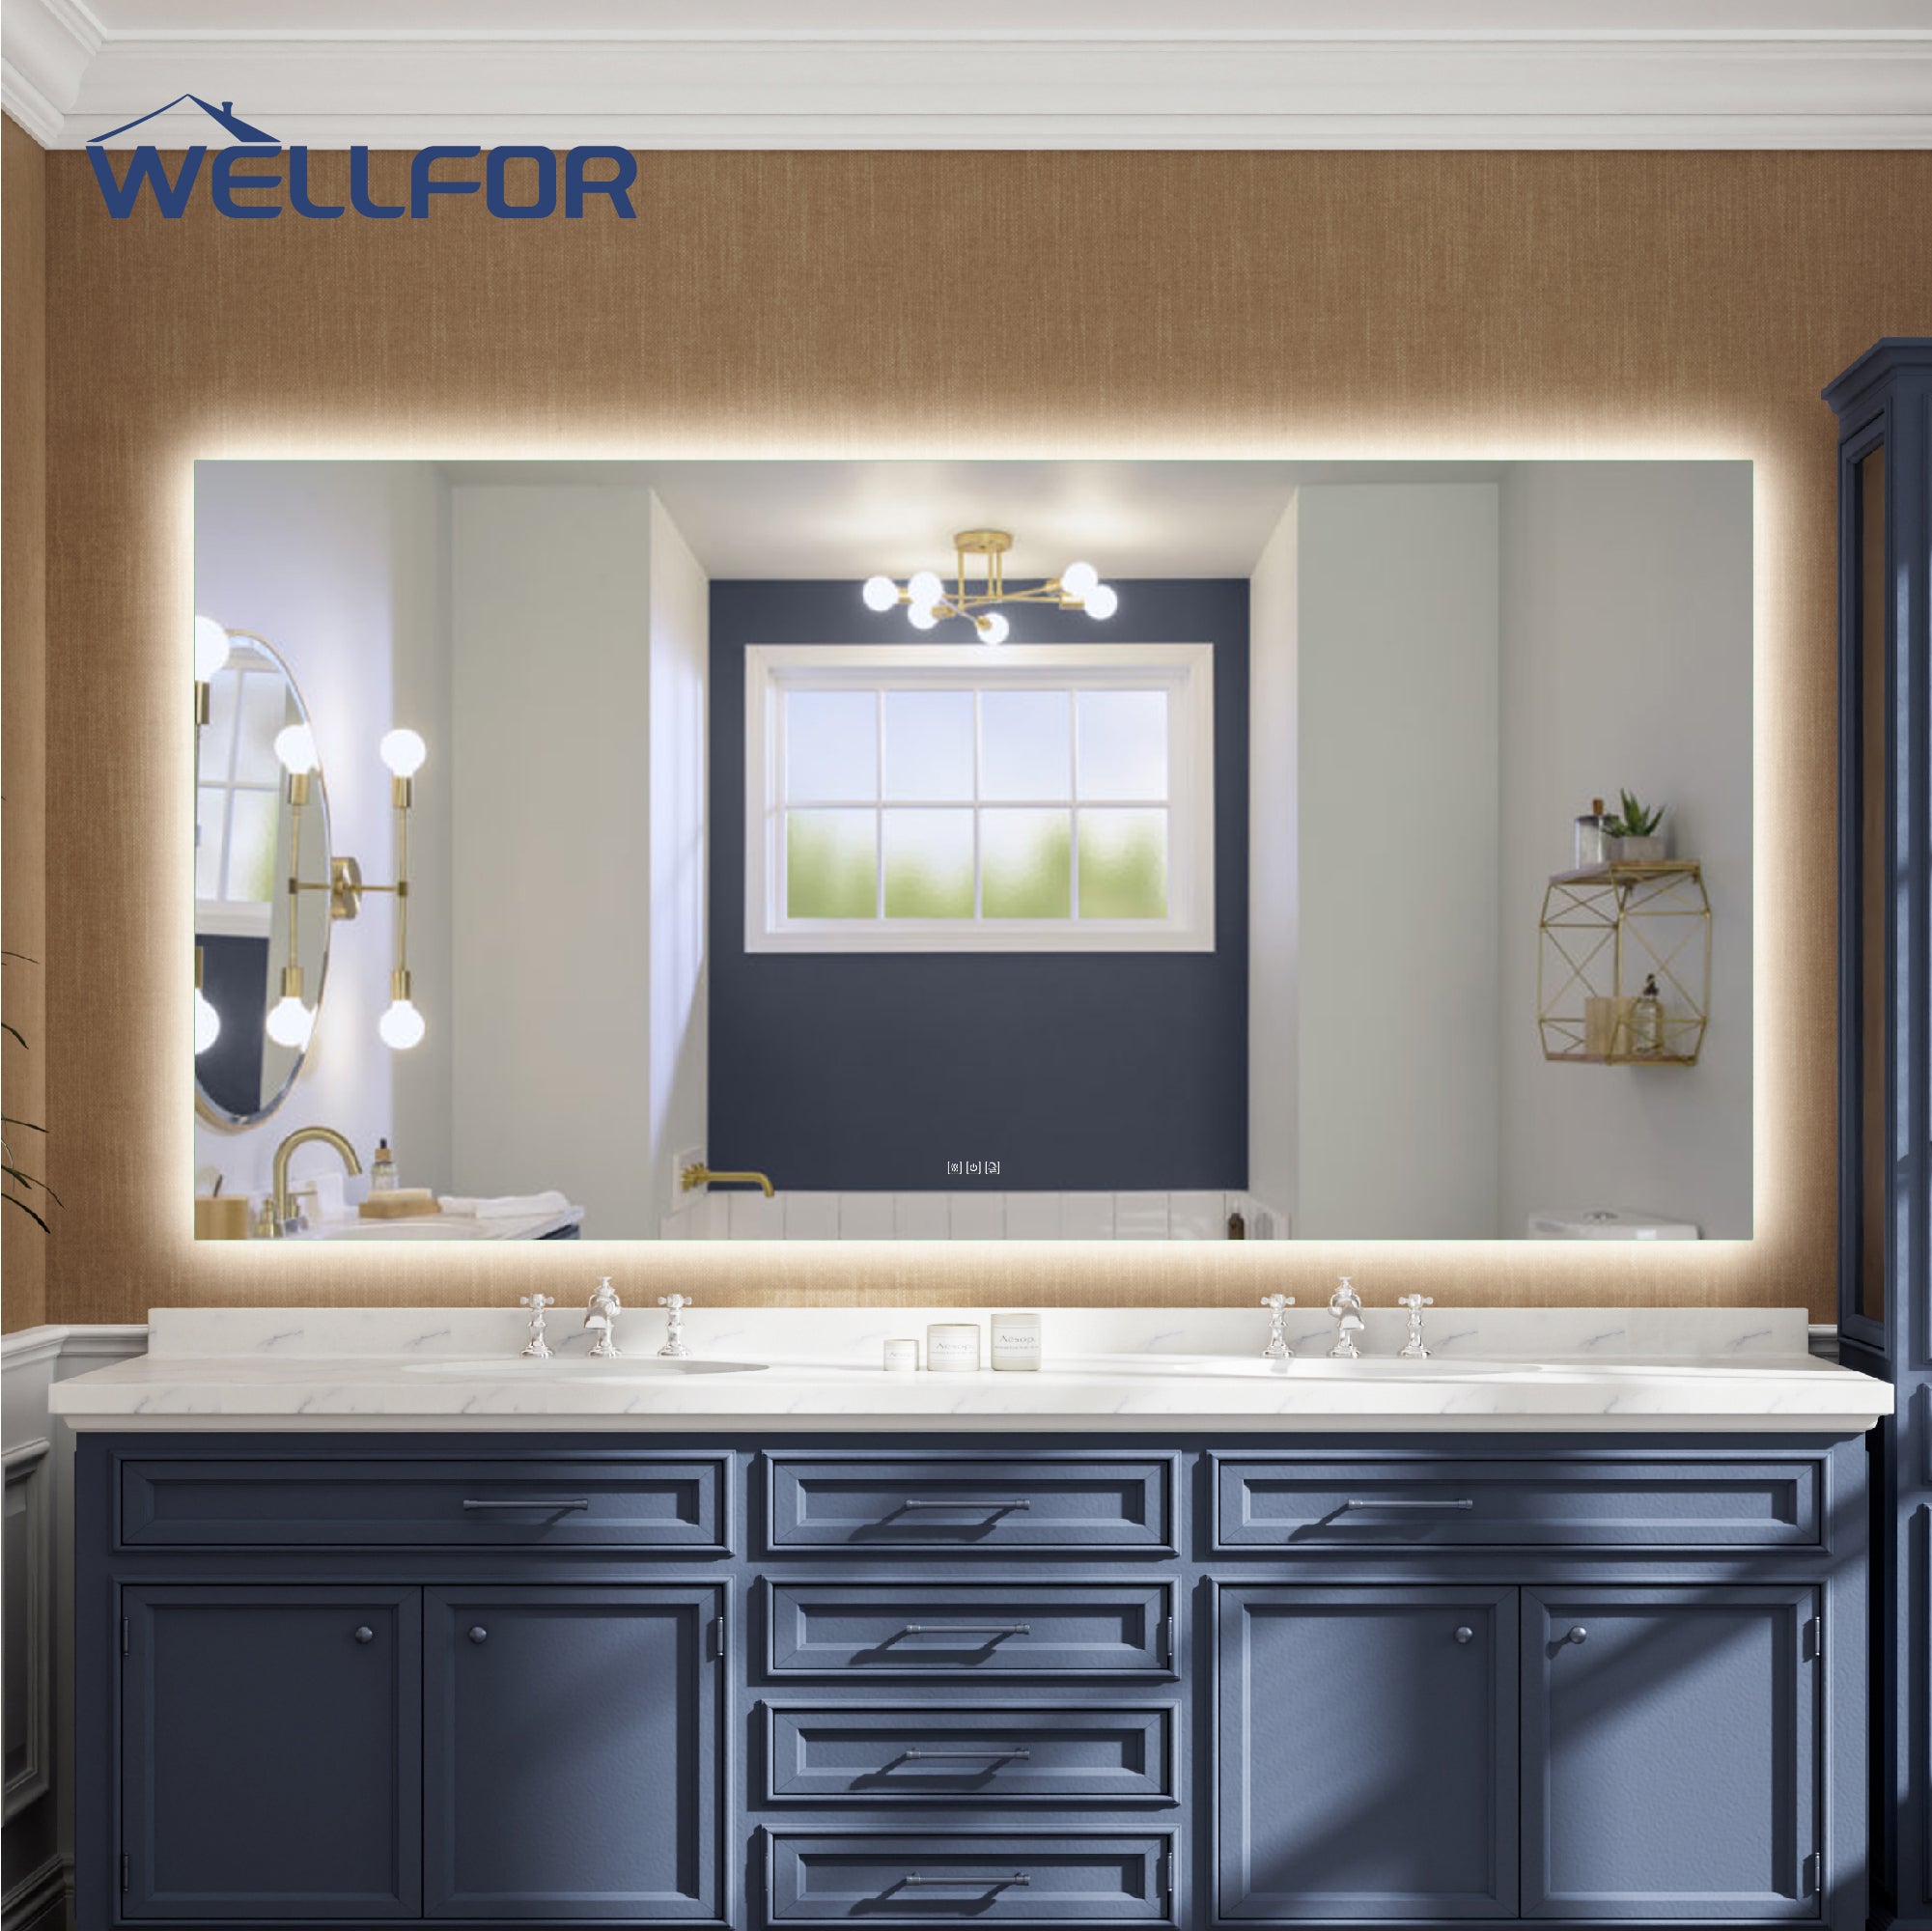 84 in. W x 42 in. H Rectangular Frameless Anti-Fog LED Light Dimmable Bathroom Vanity Mirror in Aluminum